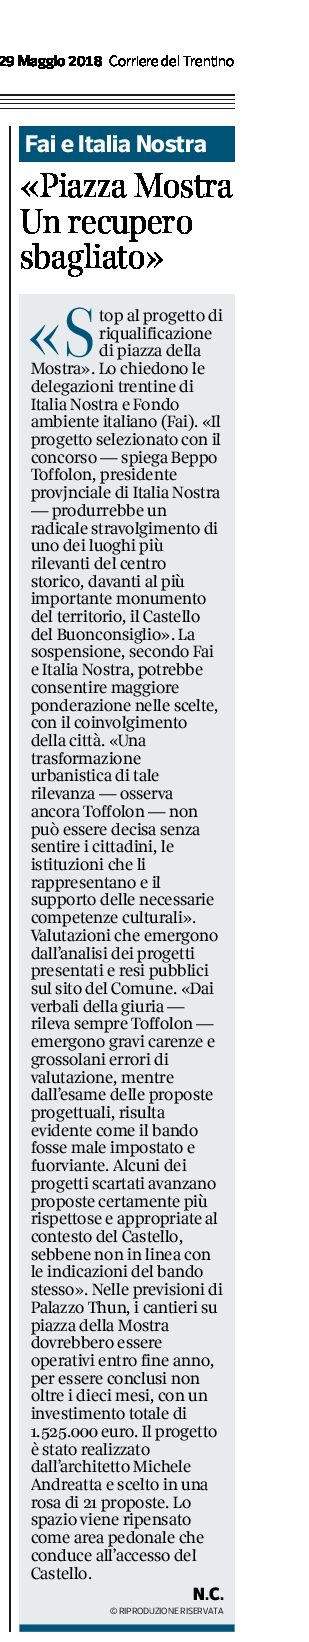 Trento, piazza Mostra: “stop al progetto di riqualificazione” da Italia Nostra e Fai